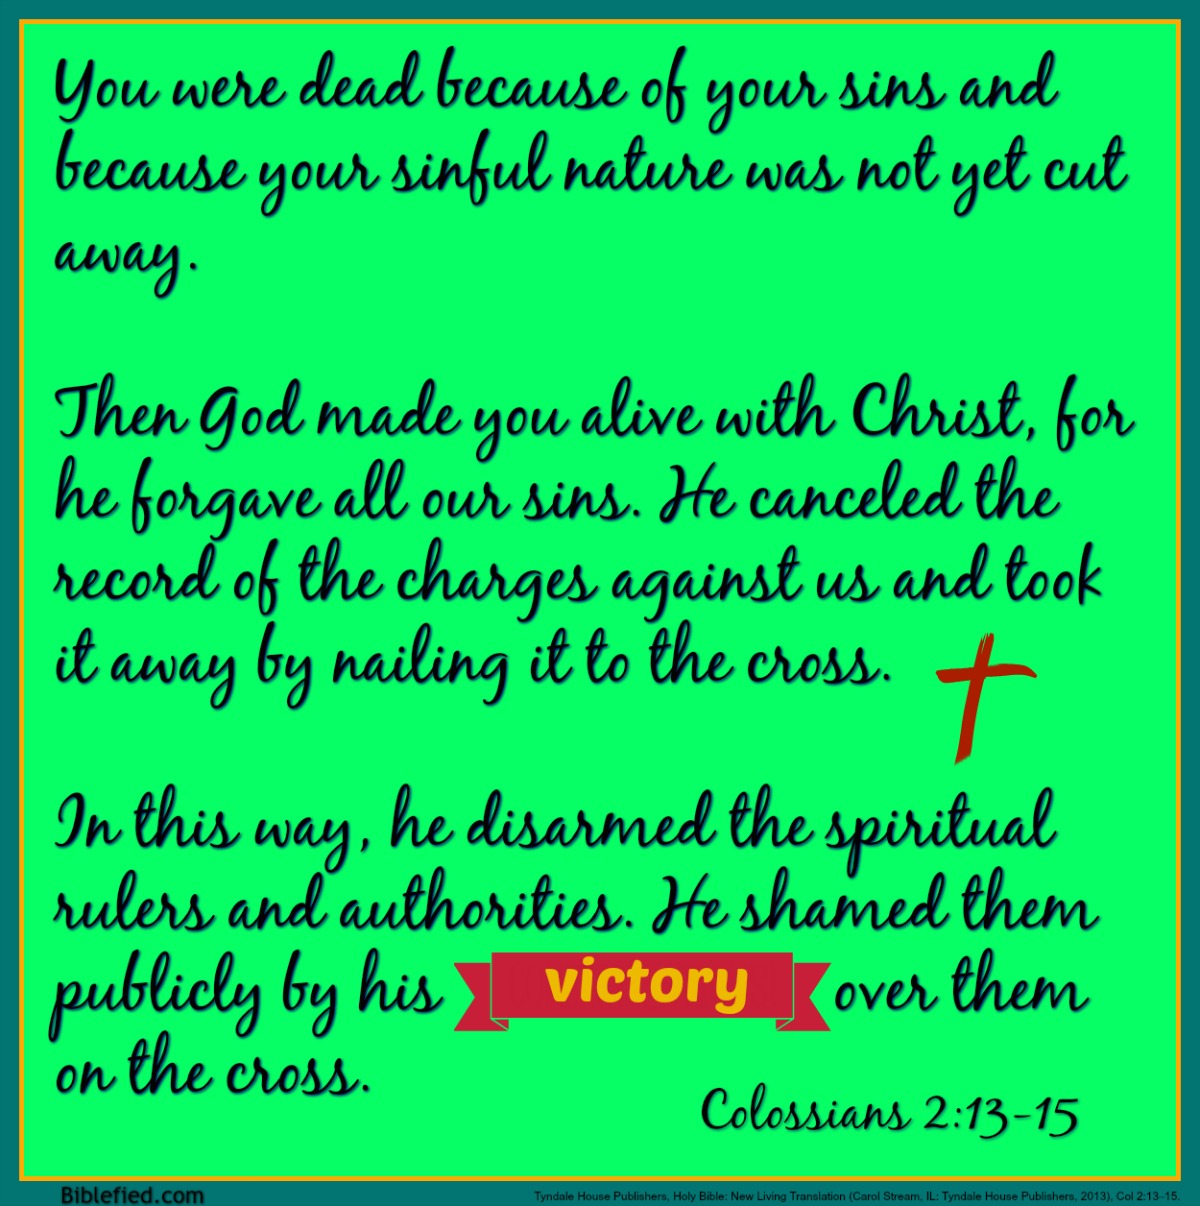 Colossians 2:13-15